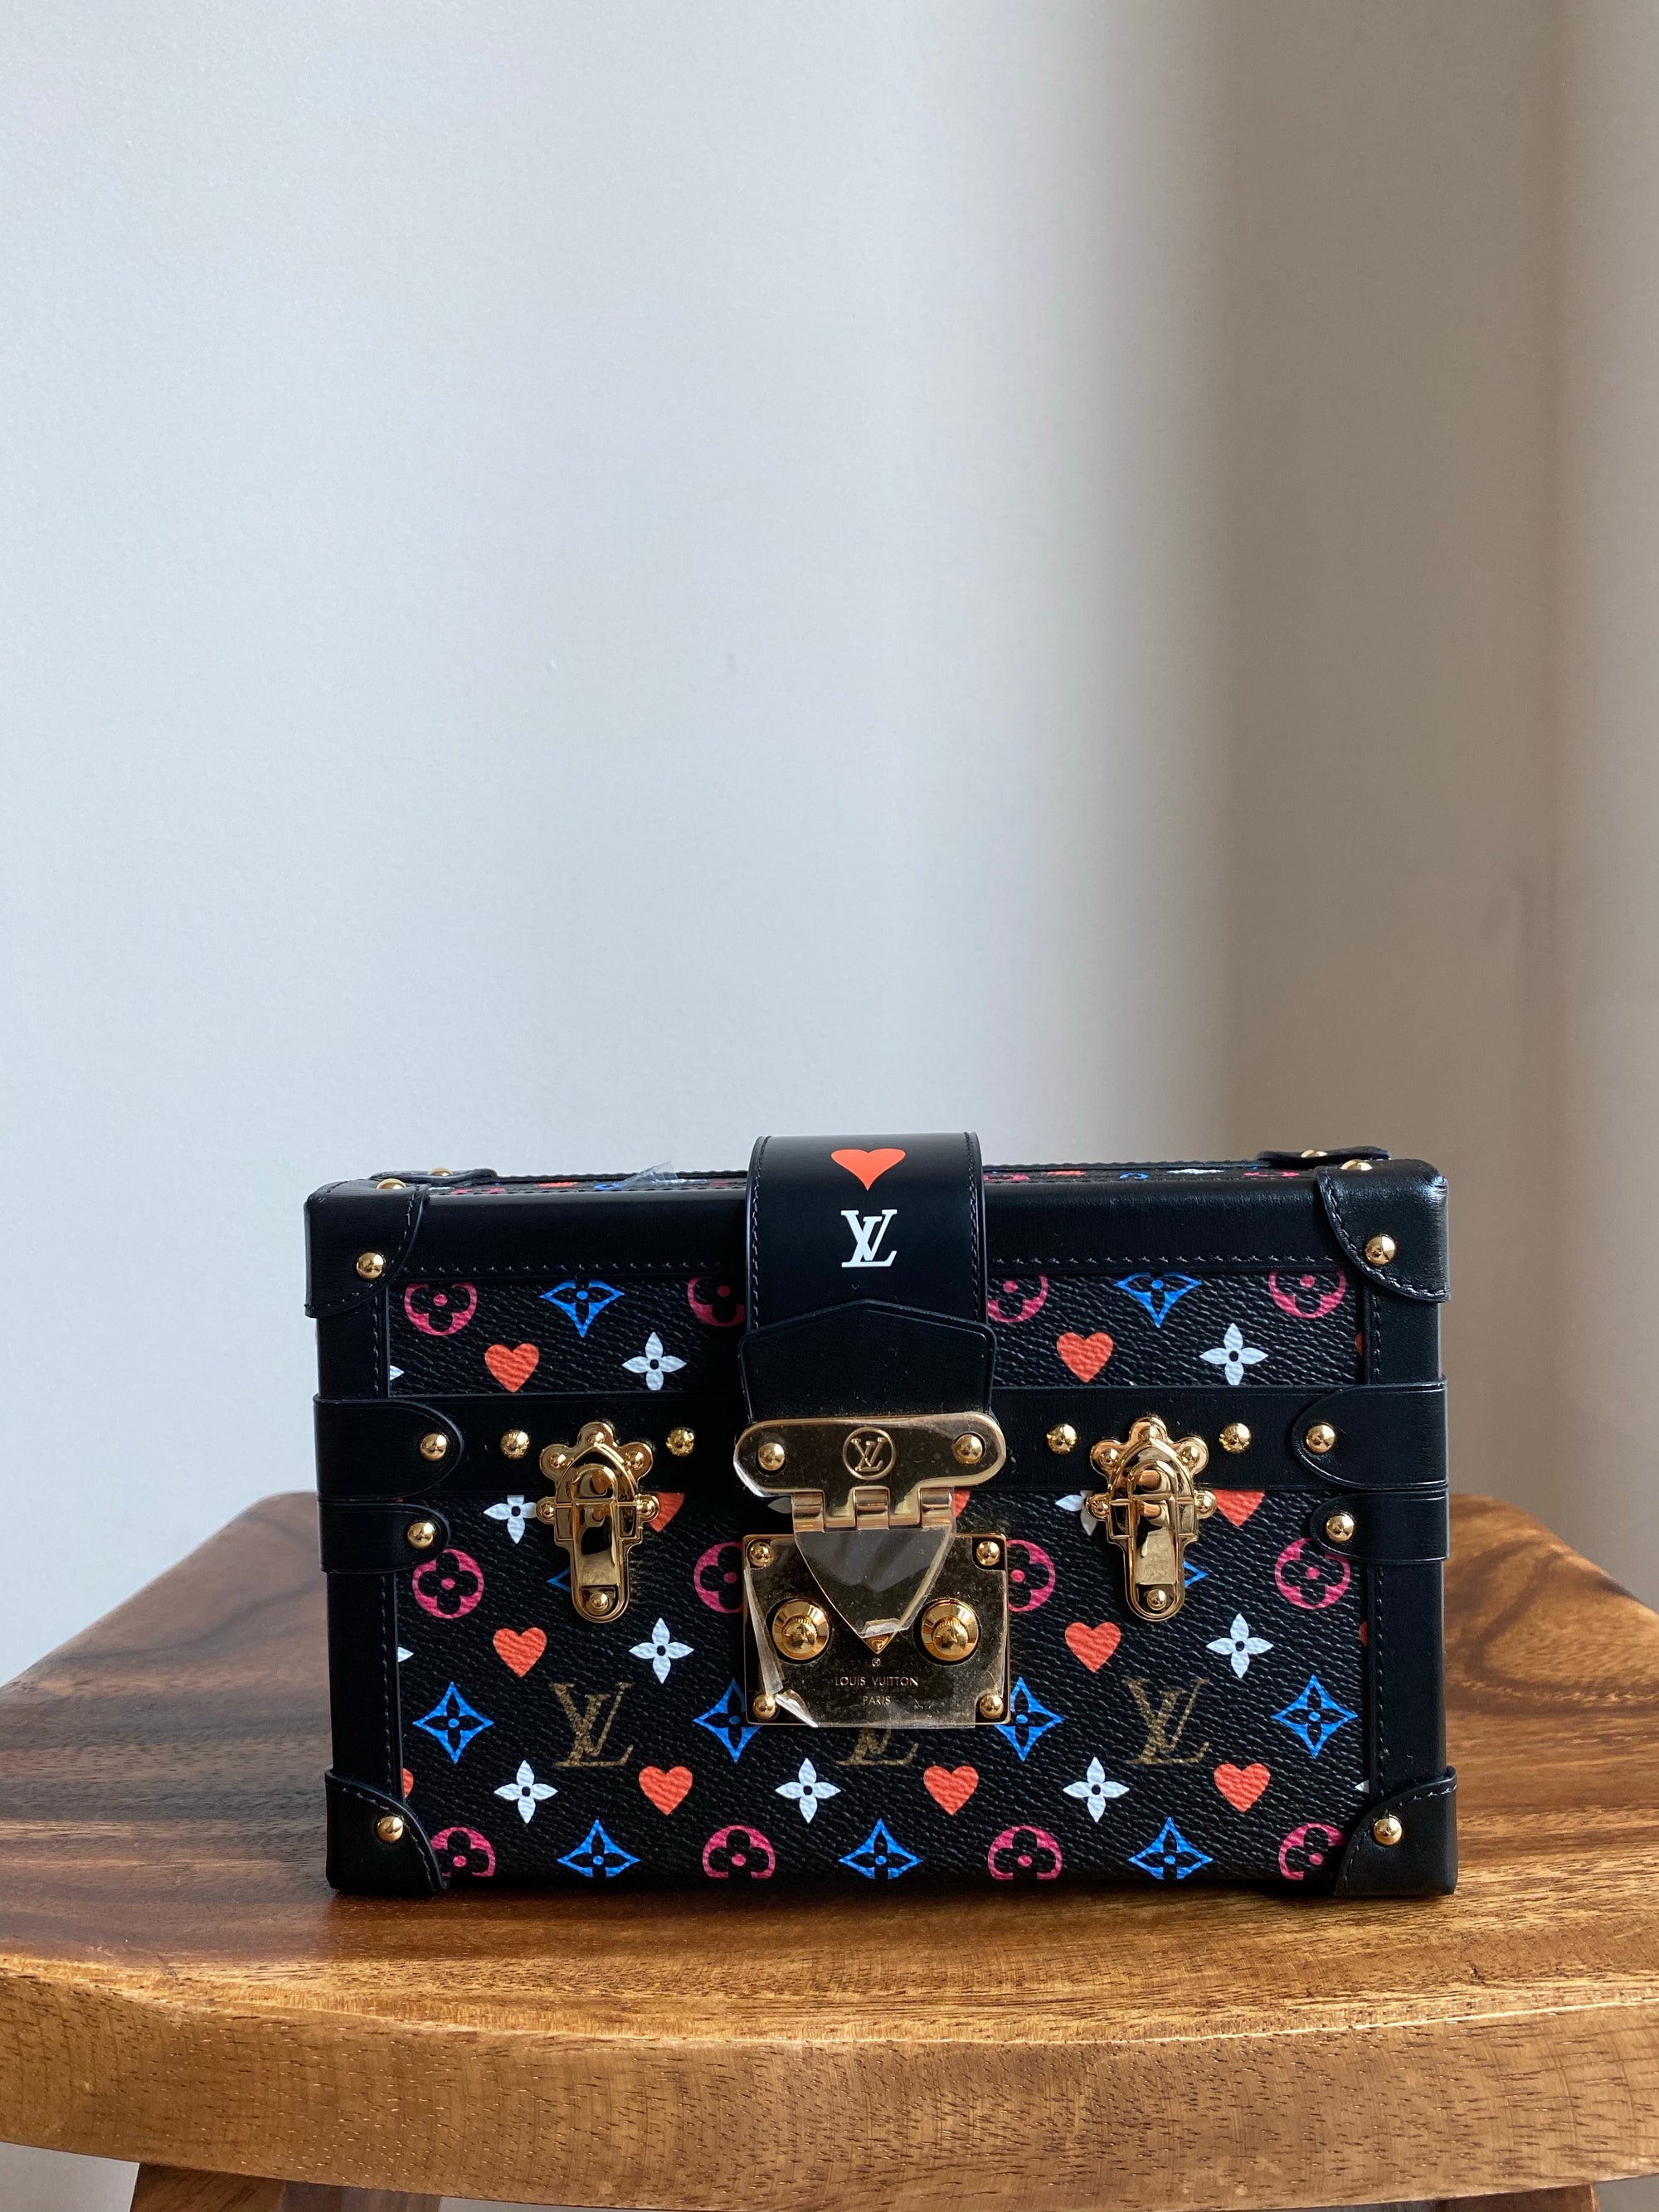 Louis Vuitton lv clutch purse evening petite Malle bag monogram